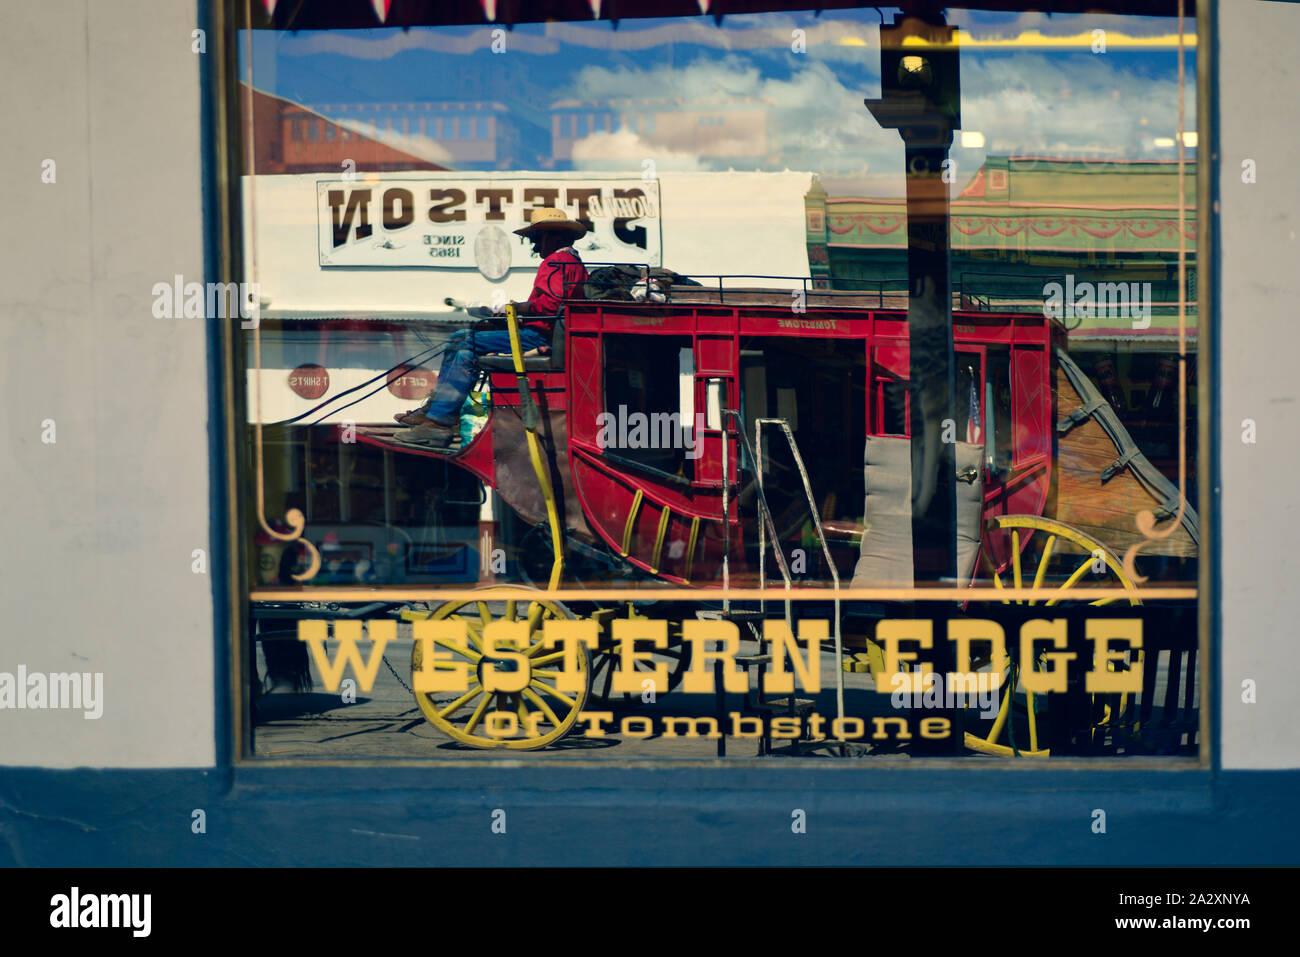 Il lato occidentale dell'oggetto contrassegnato per la rimozione definitiva modello di treno shop ha un riflesso nella loro finestra storefront di un rosso stagecoach da parte di guida in oggetto contrassegnato per la rimozione definitiva, AZ, Stati Uniti d'America Foto Stock